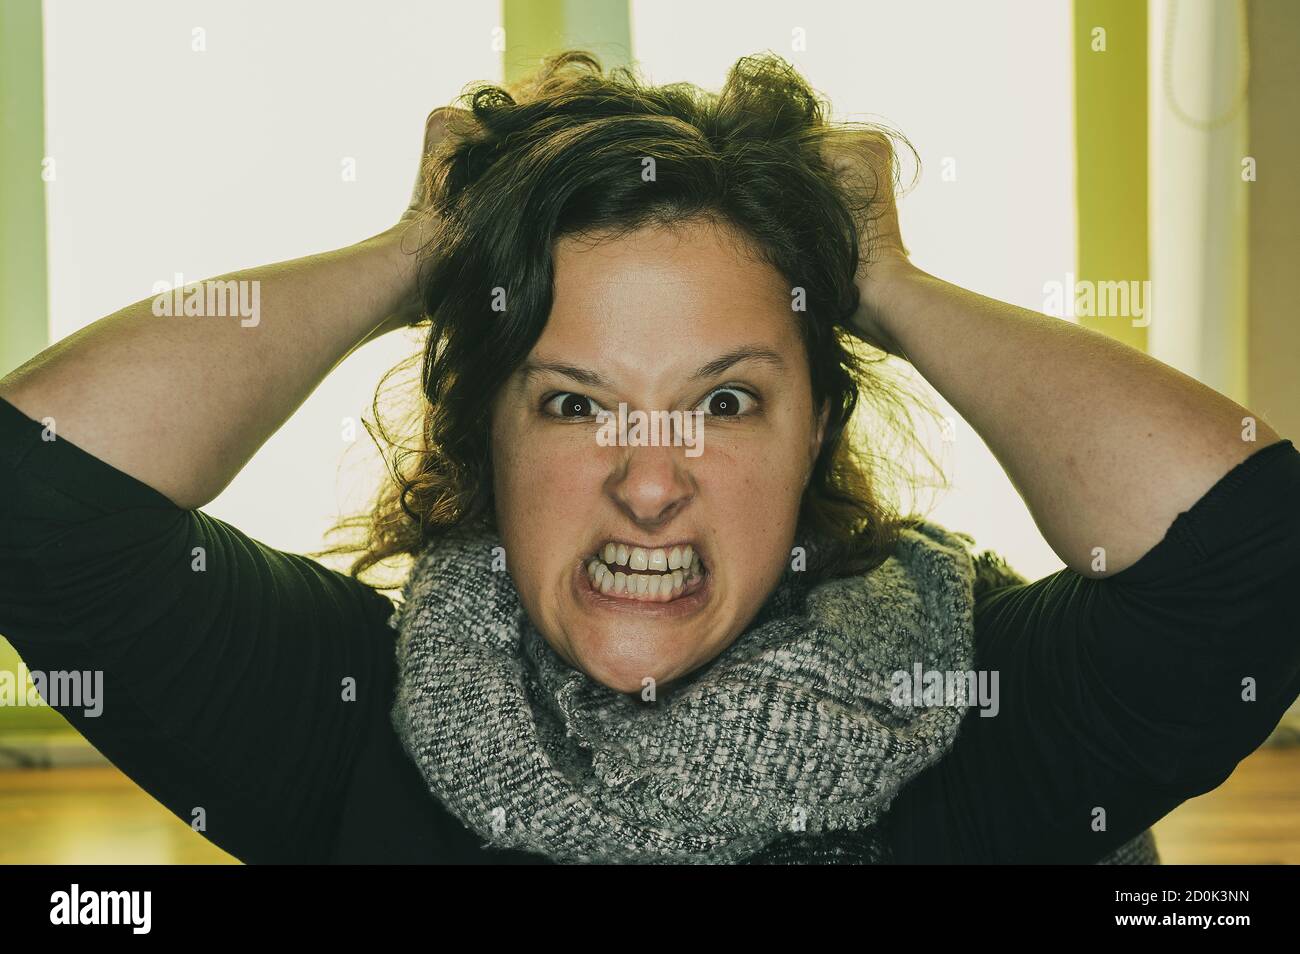 Una giovane donna con un aspetto arrabbiato sta tirando i capelli. Foto Stock